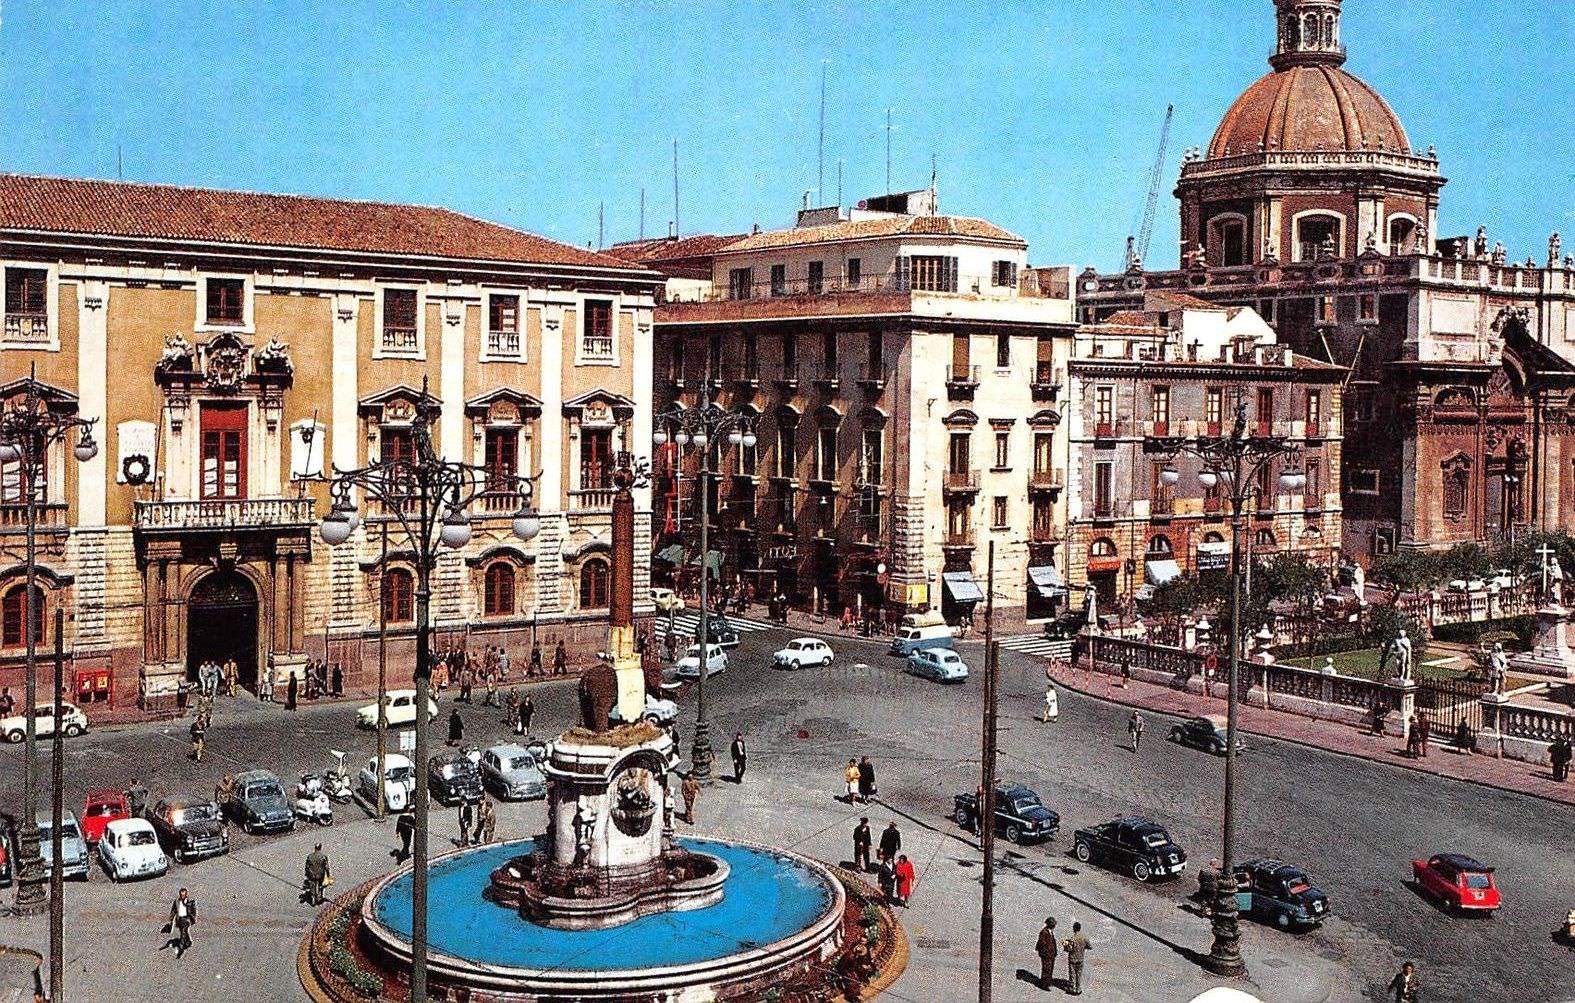 Piazza Duomo, summa dell’autorità civile e religiosa a Catania